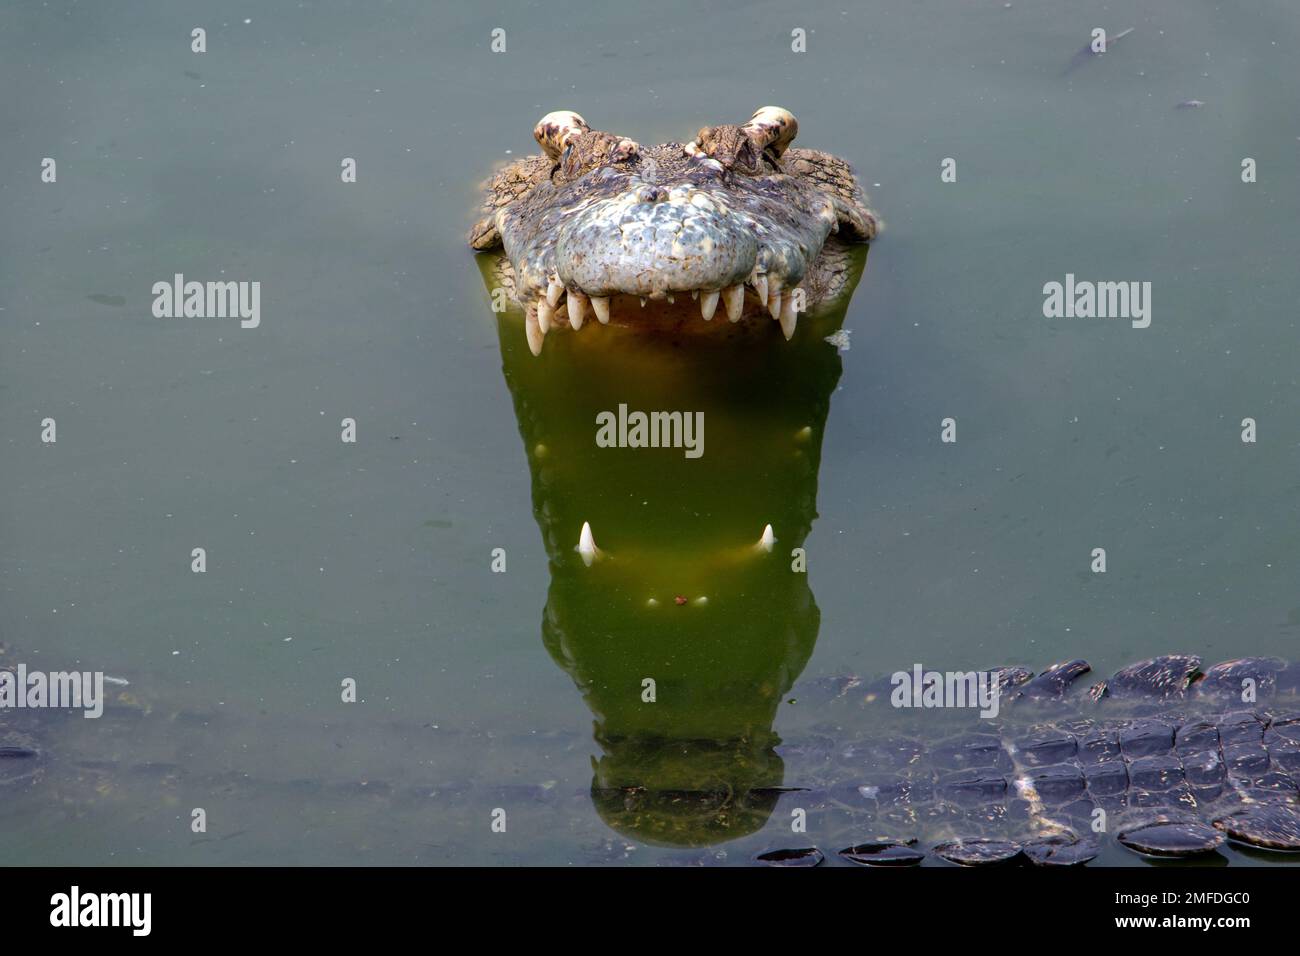 Il coccodrillo con la bocca aperta guarda dall'acqua dove nuota il prossimo coccodrillo Foto Stock